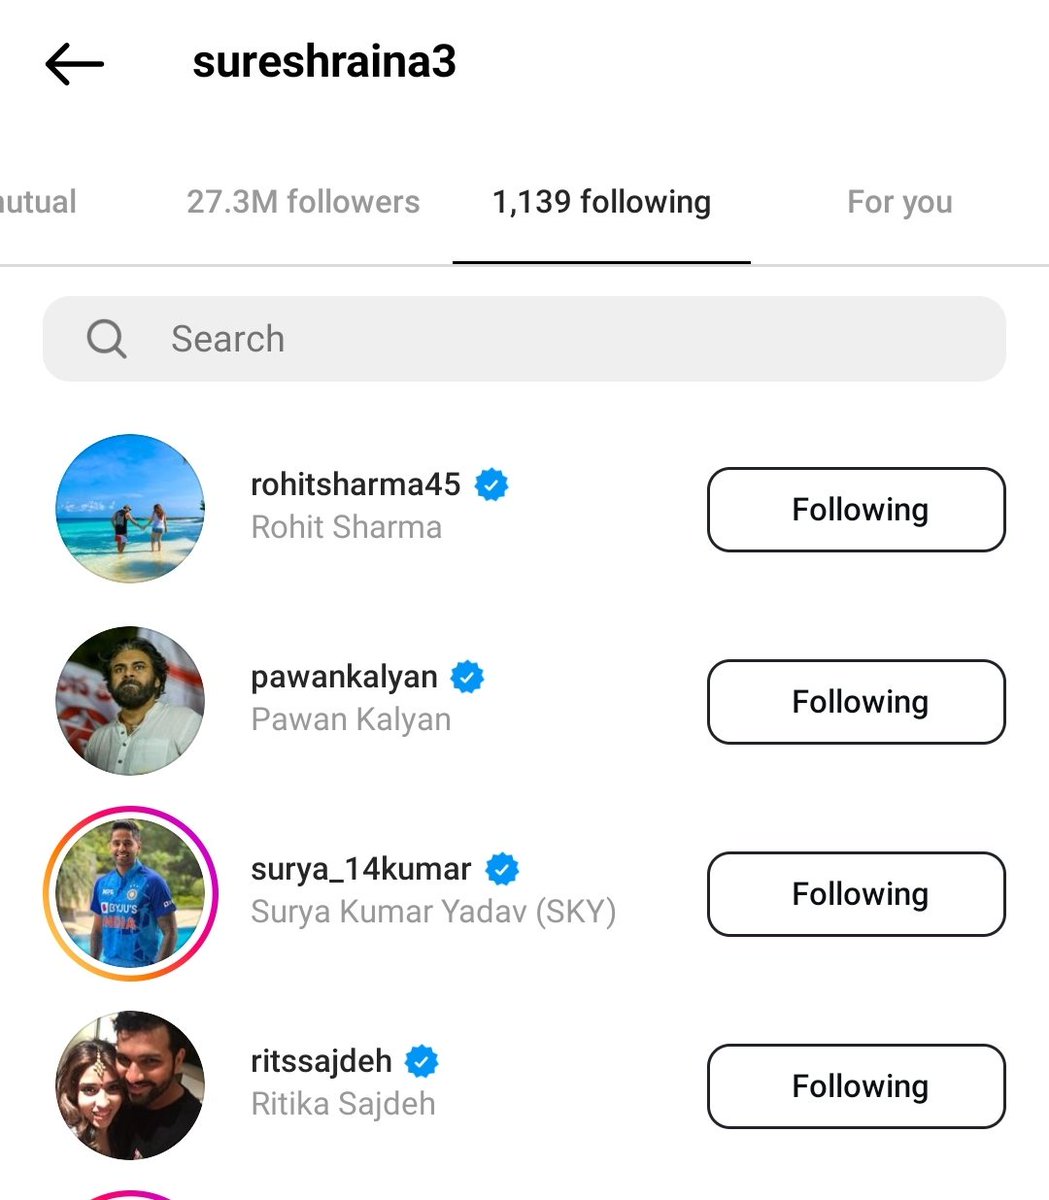 Cricketer SureshRaina Following PawanKalyan in Instagram 🔥 @PawanKalyan @ImRaina